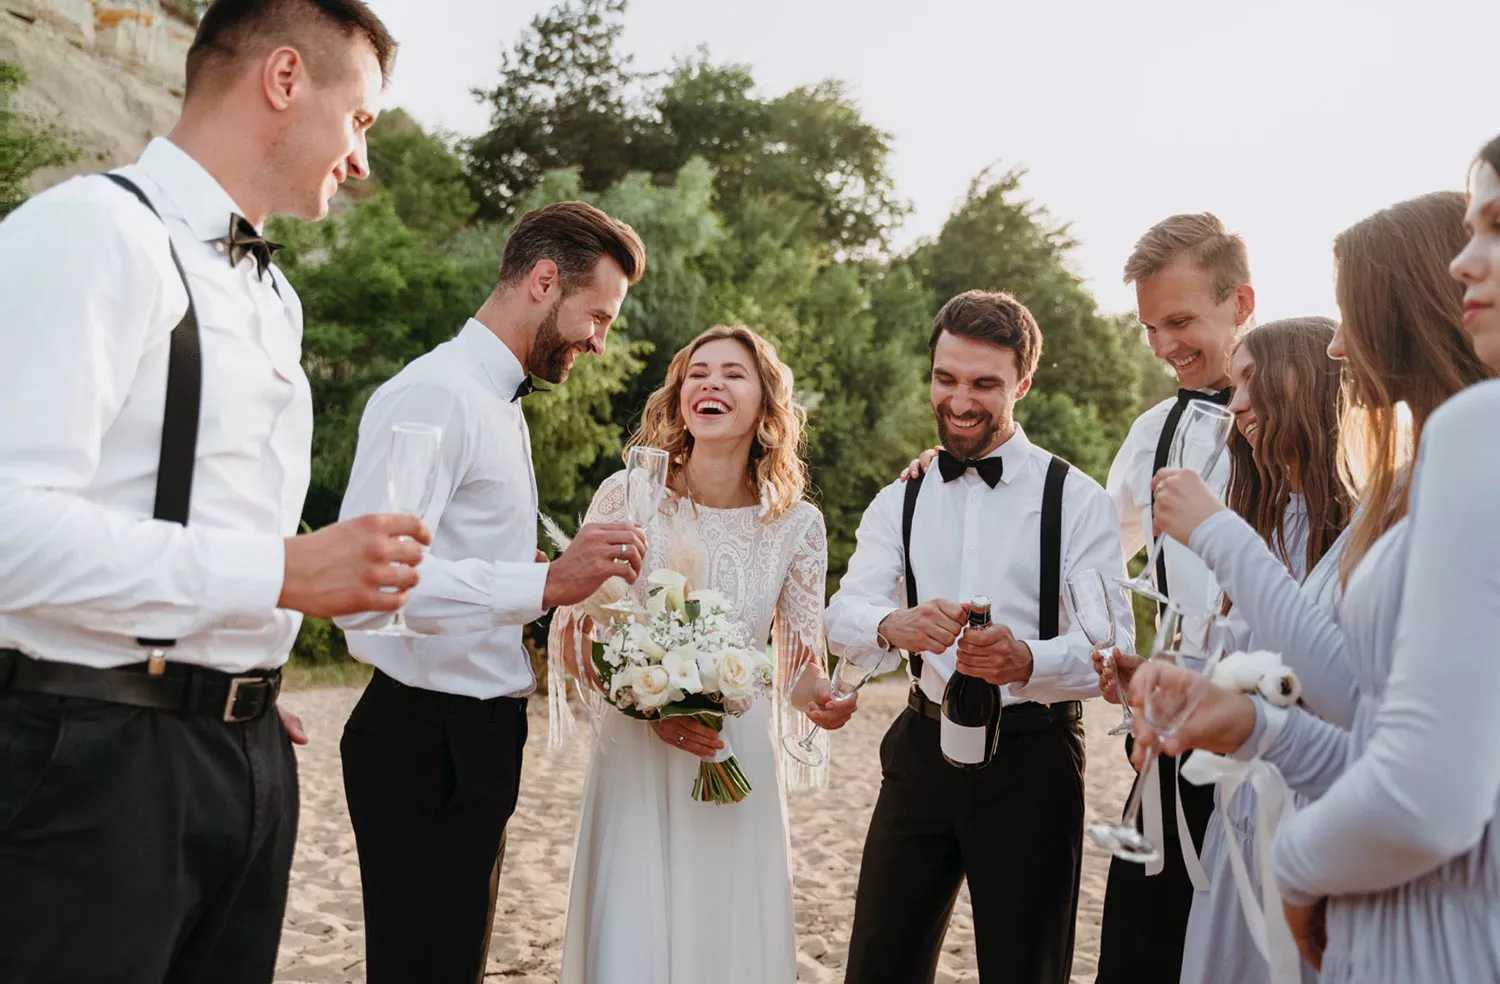 戶外婚禮比起一般宴會廳更能加深親友間的互動。